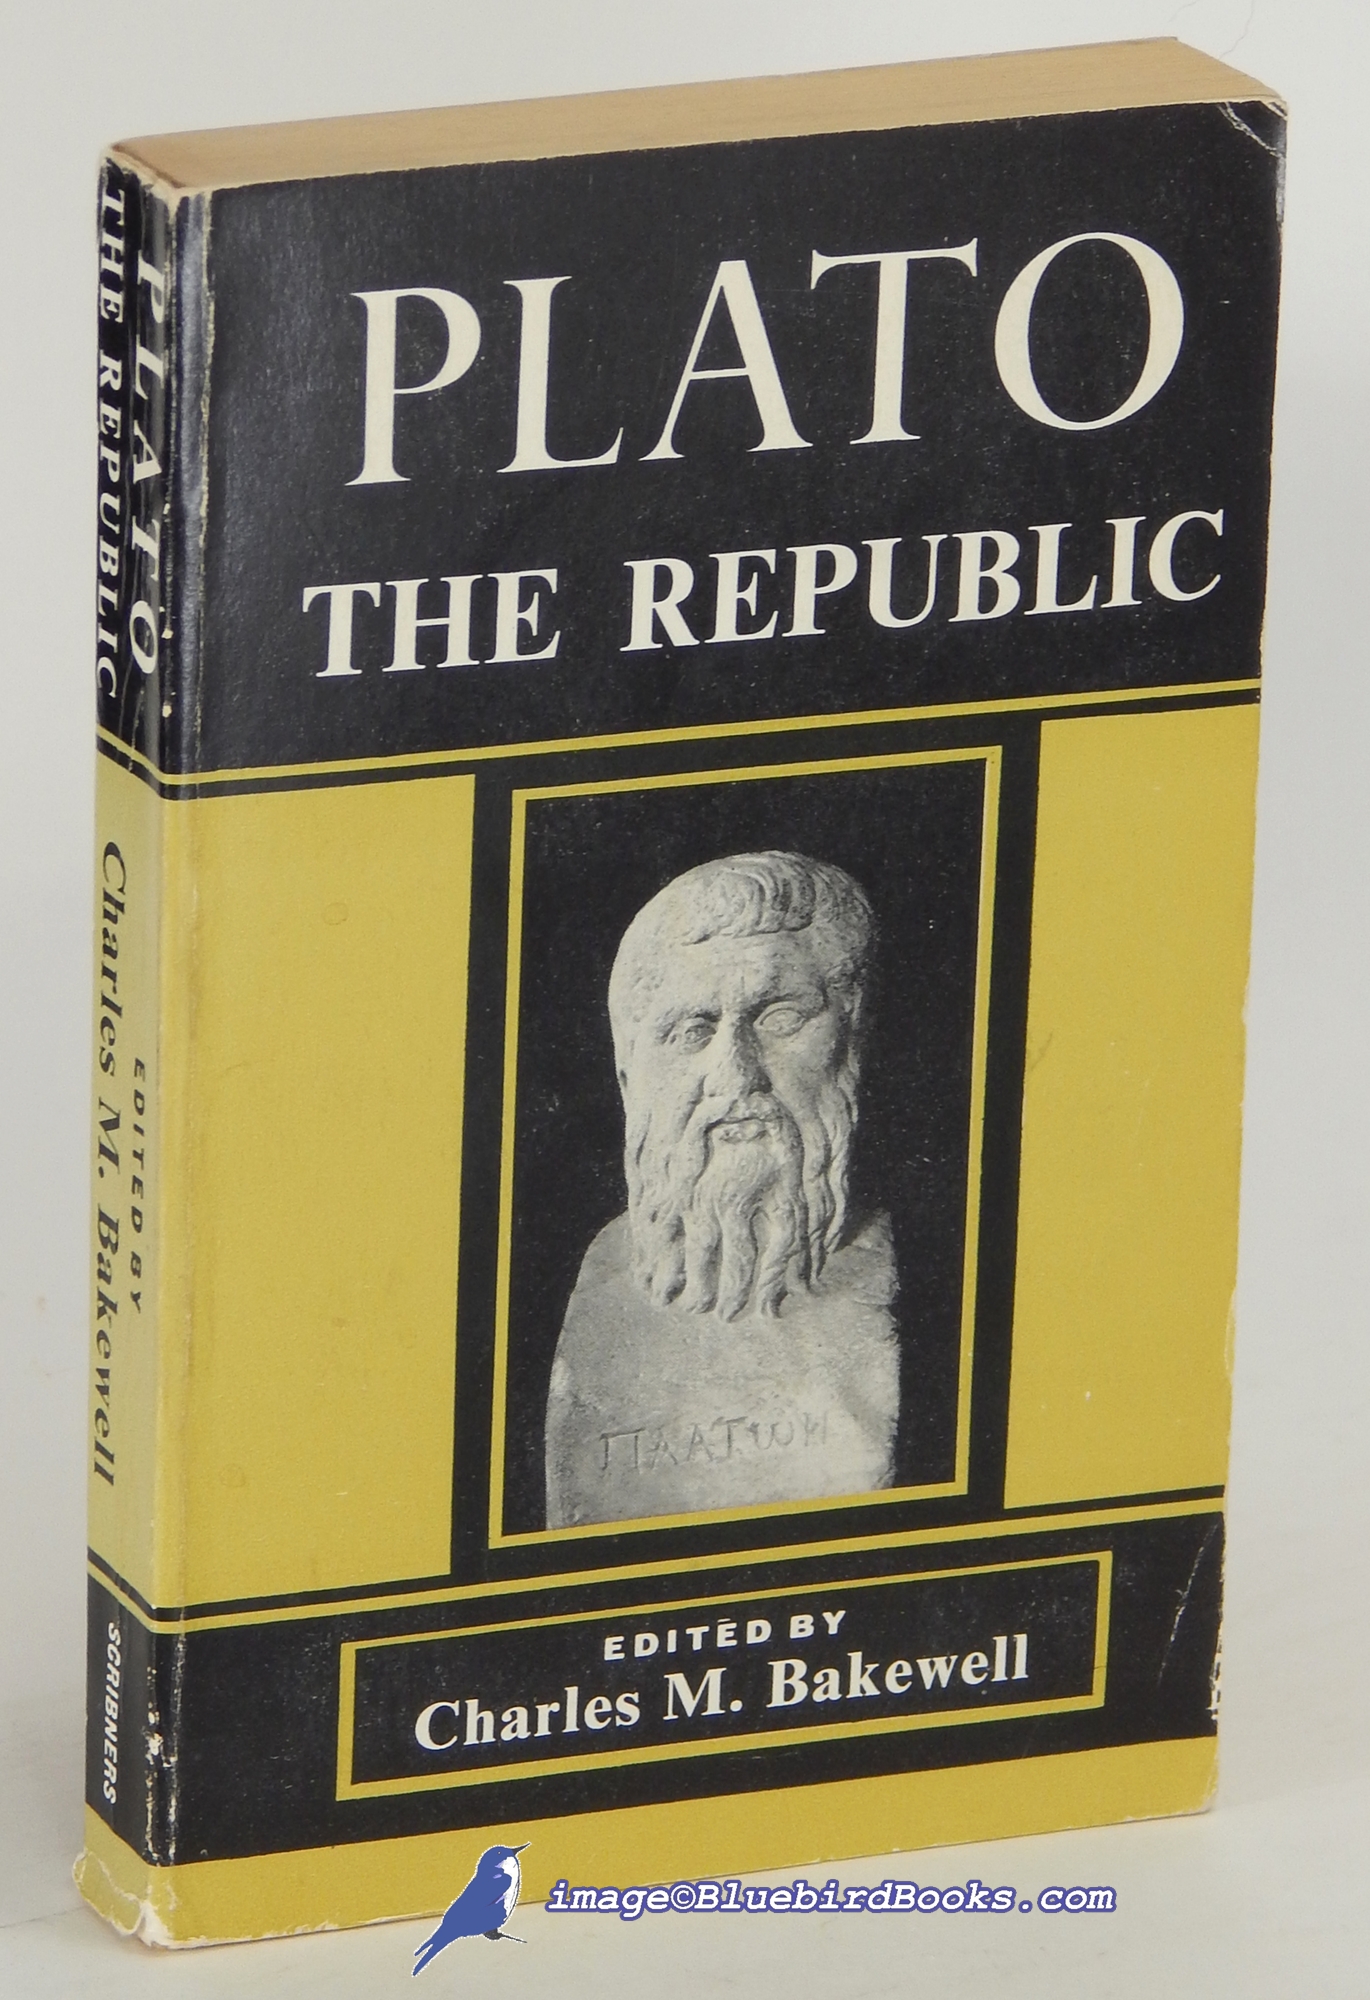 PLATO - Plato's the Republic (in Jowett Translation)